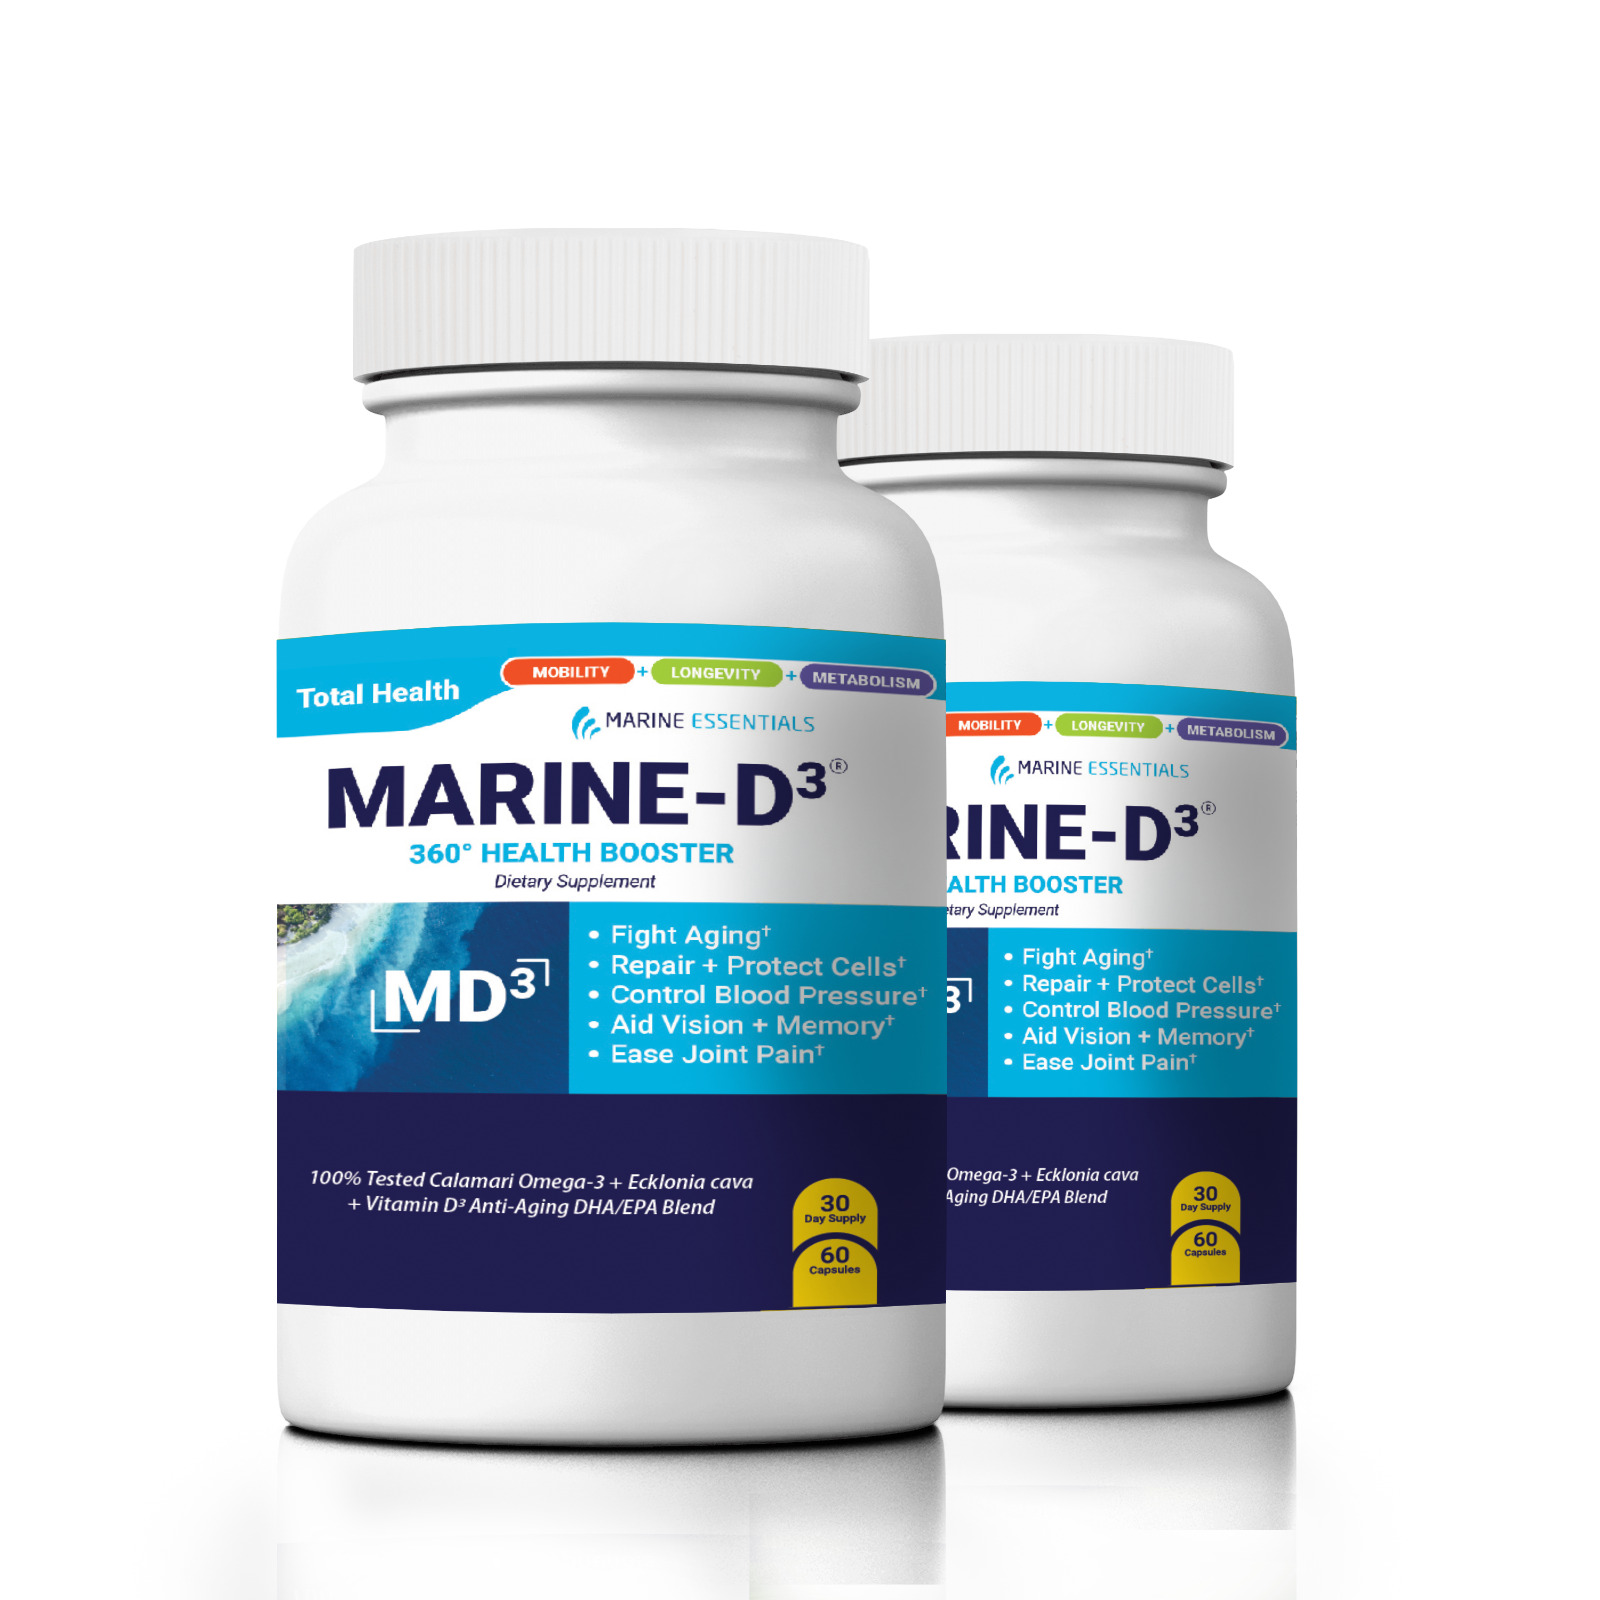 Marine Essentials | Marine-D3 | Anti-Aging | Omega-3 | 2 Bottles (120 Capsules)